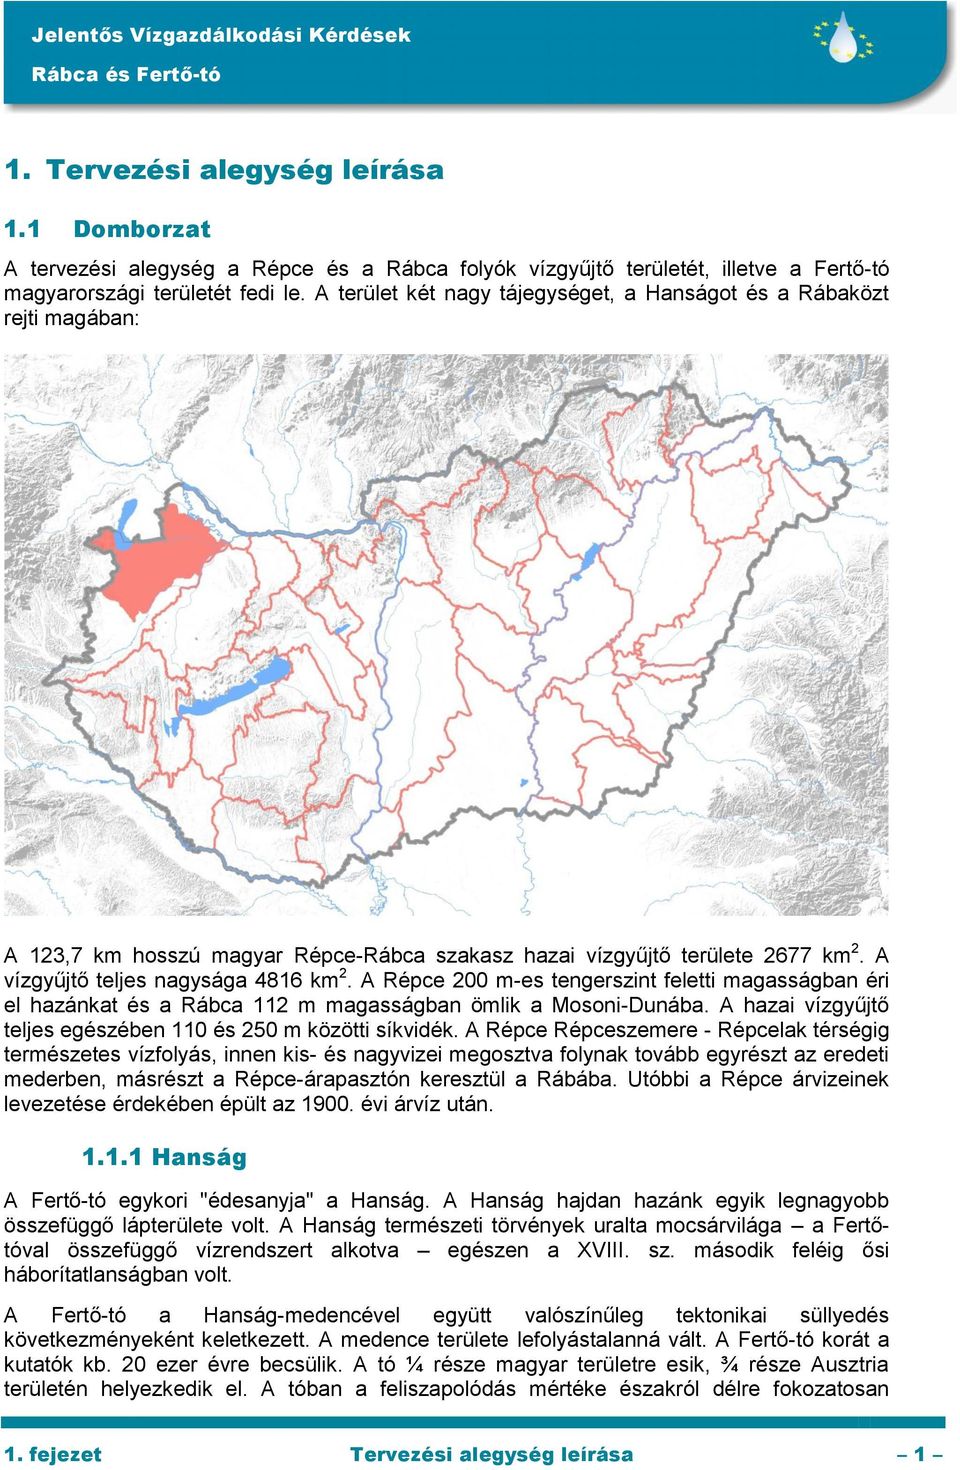 A Répce 200 m-es tengerszint feletti magasságban éri el hazánkat és a Rábca 112 m magasságban ömlik a Mosoni-Dunába. A hazai vízgyűjtő teljes egészében 110 és 250 m közötti síkvidék.